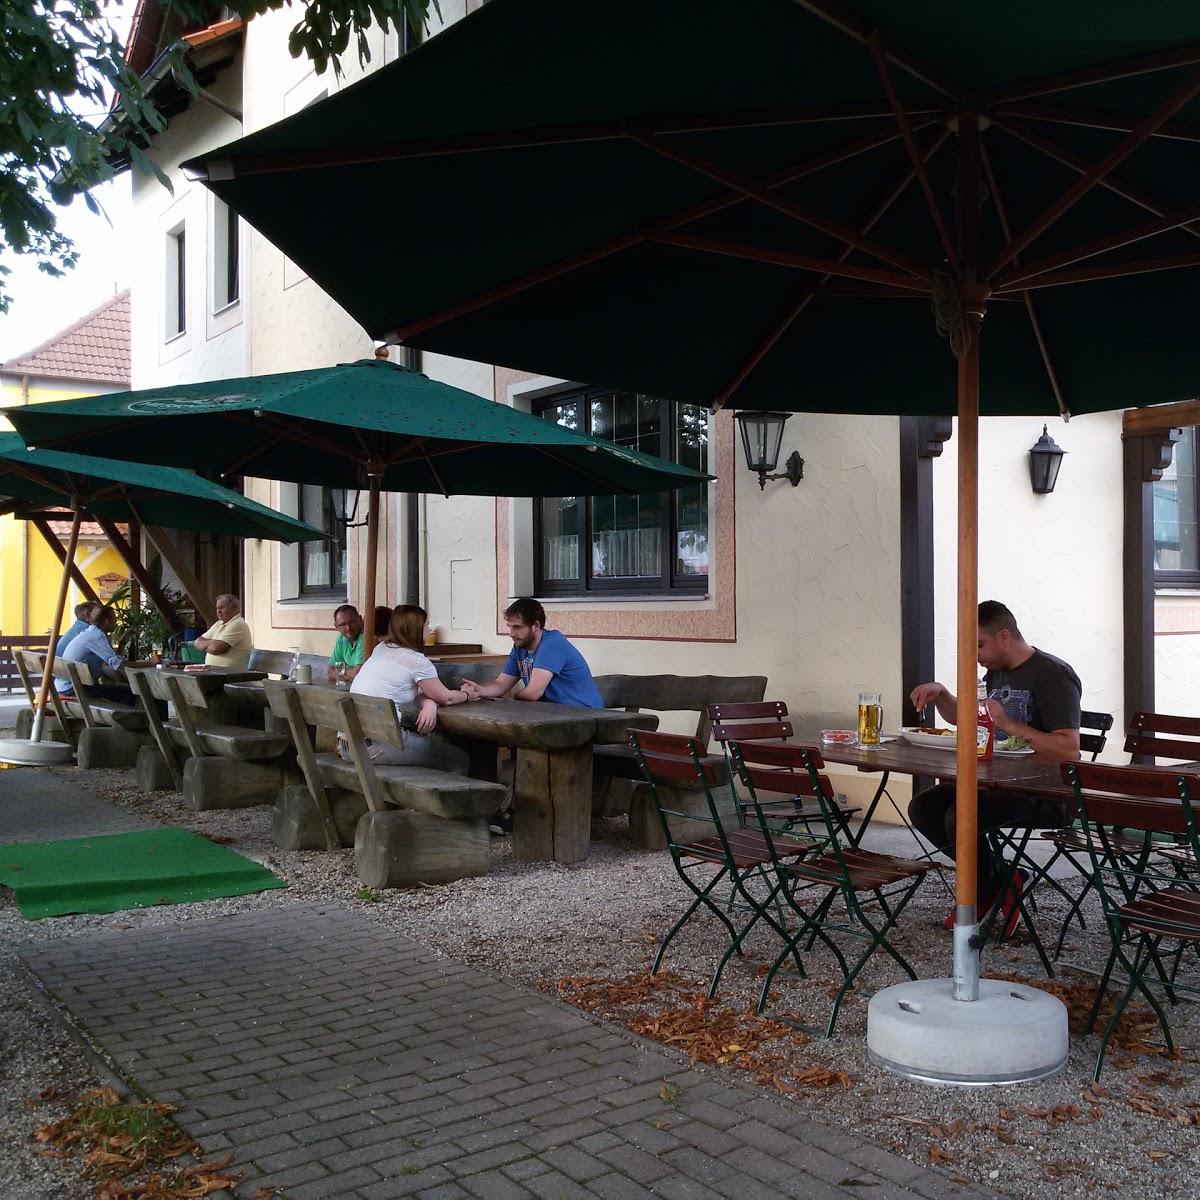 Restaurant "Gasthof Gambrinus" in Ingolstadt